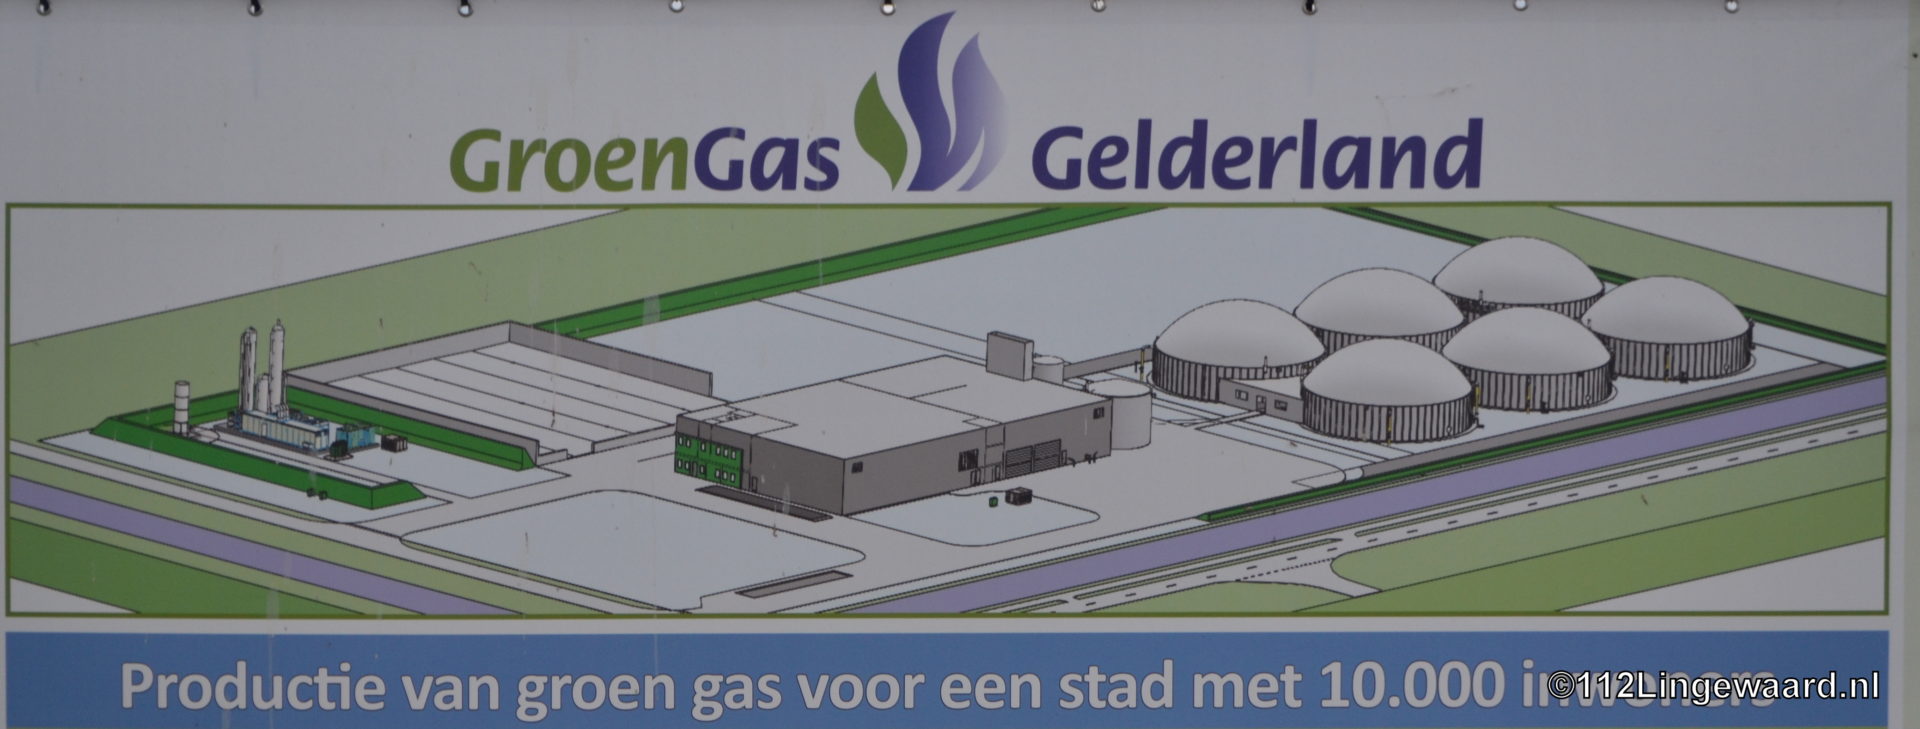 groen gas gelderland doek 2